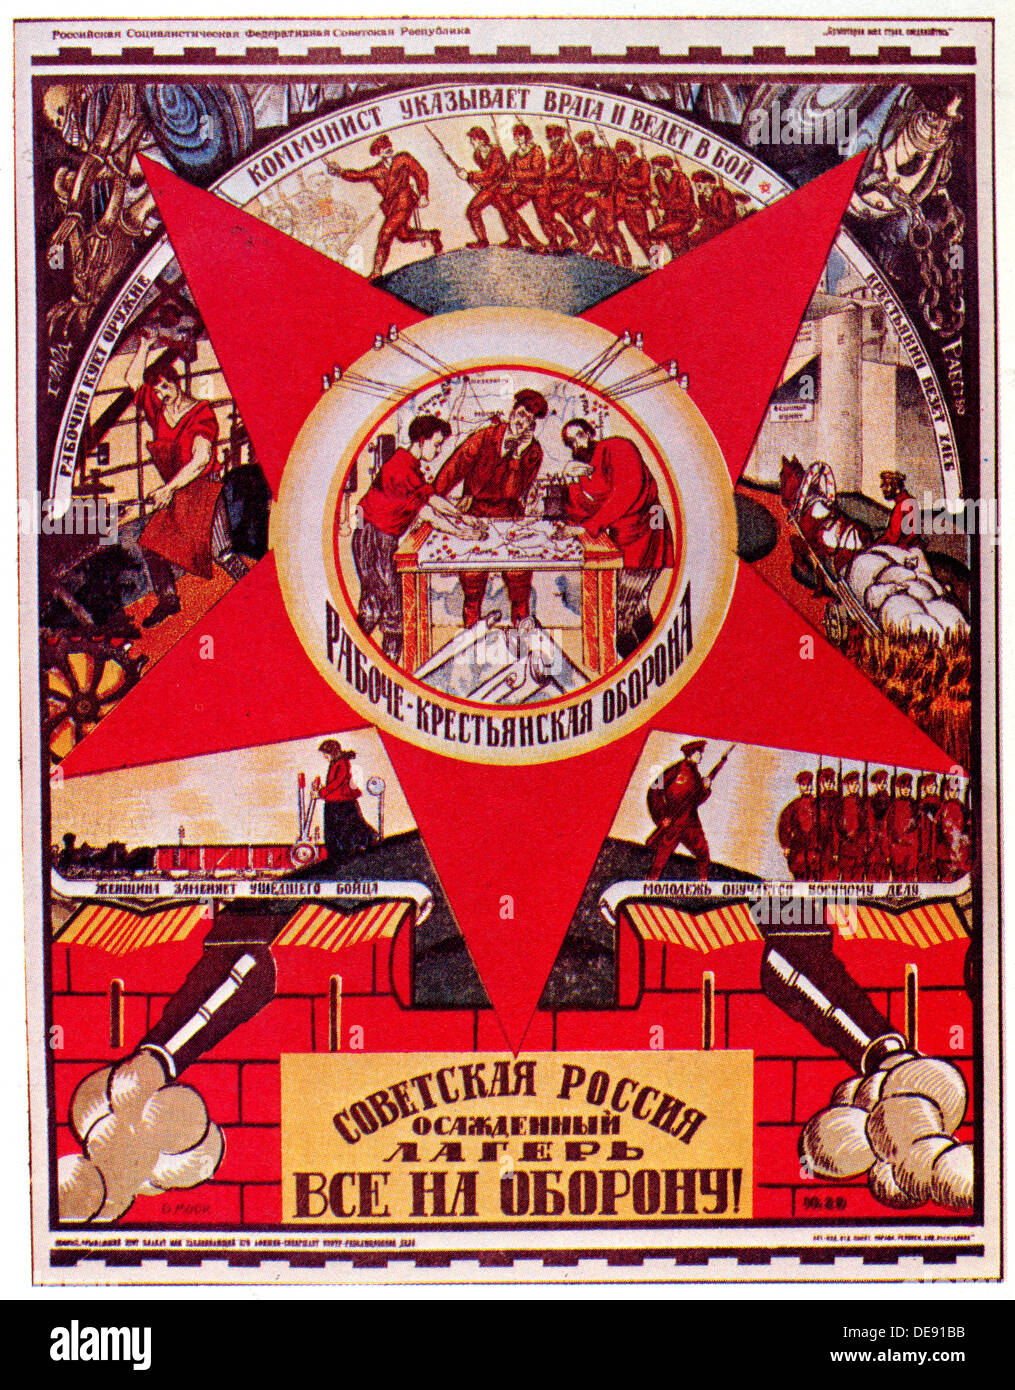 La Russia sovietica è sotto assedio. Tutti a difesa! (Poster), 1919. Artista: Moor, Dmitri Stachievich (1883-1946) Foto Stock